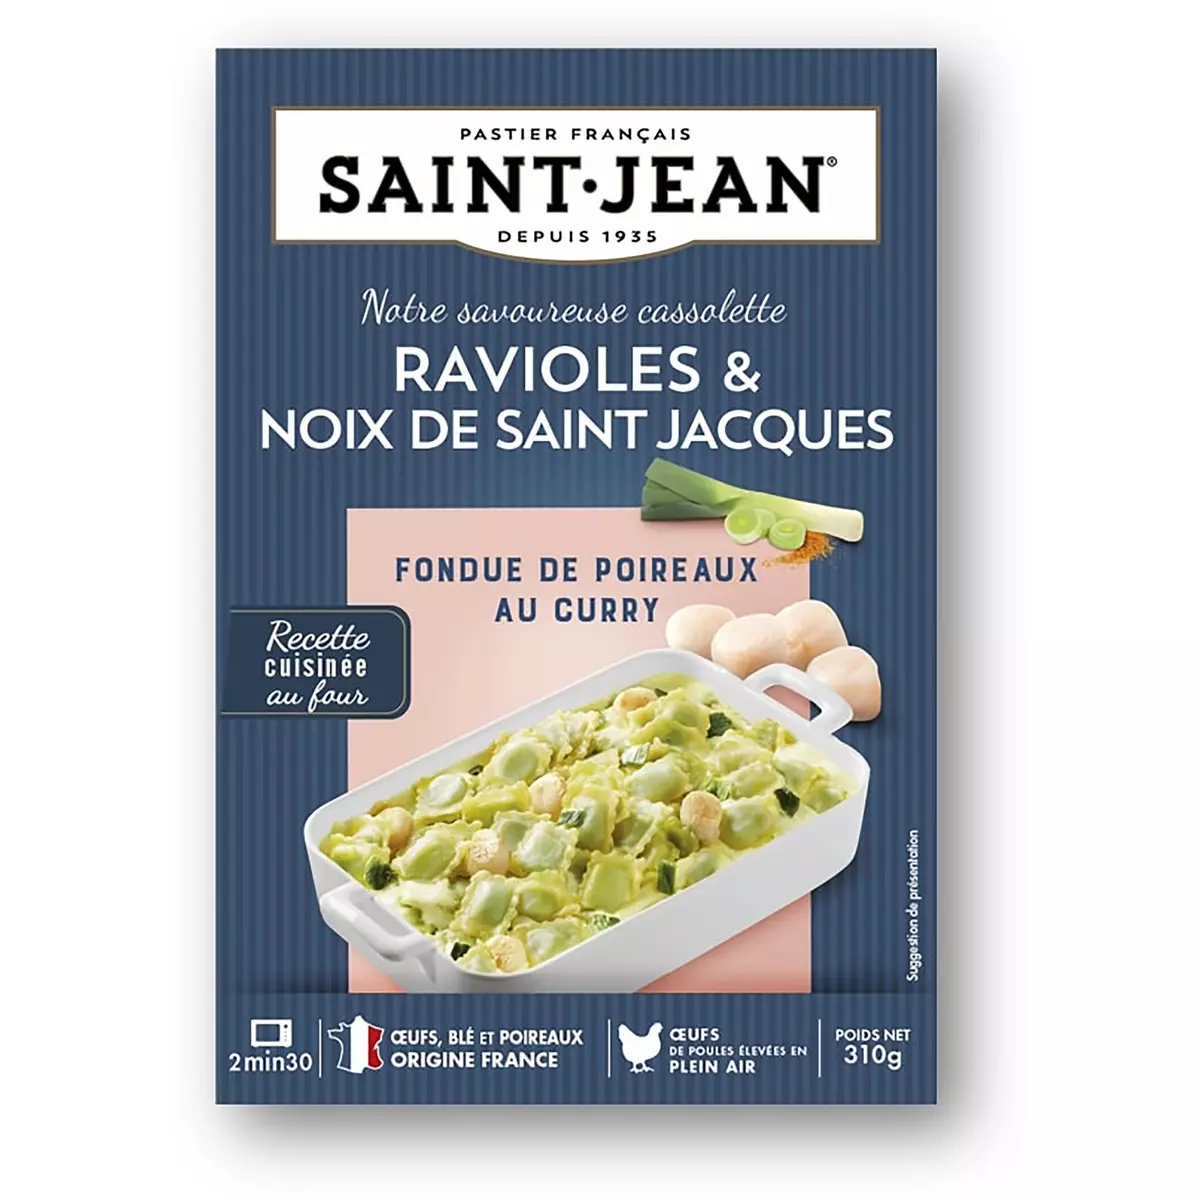 SAINT JEAN Ravioles & noix de Saint Jacques fondue de poireaux au curry 310g